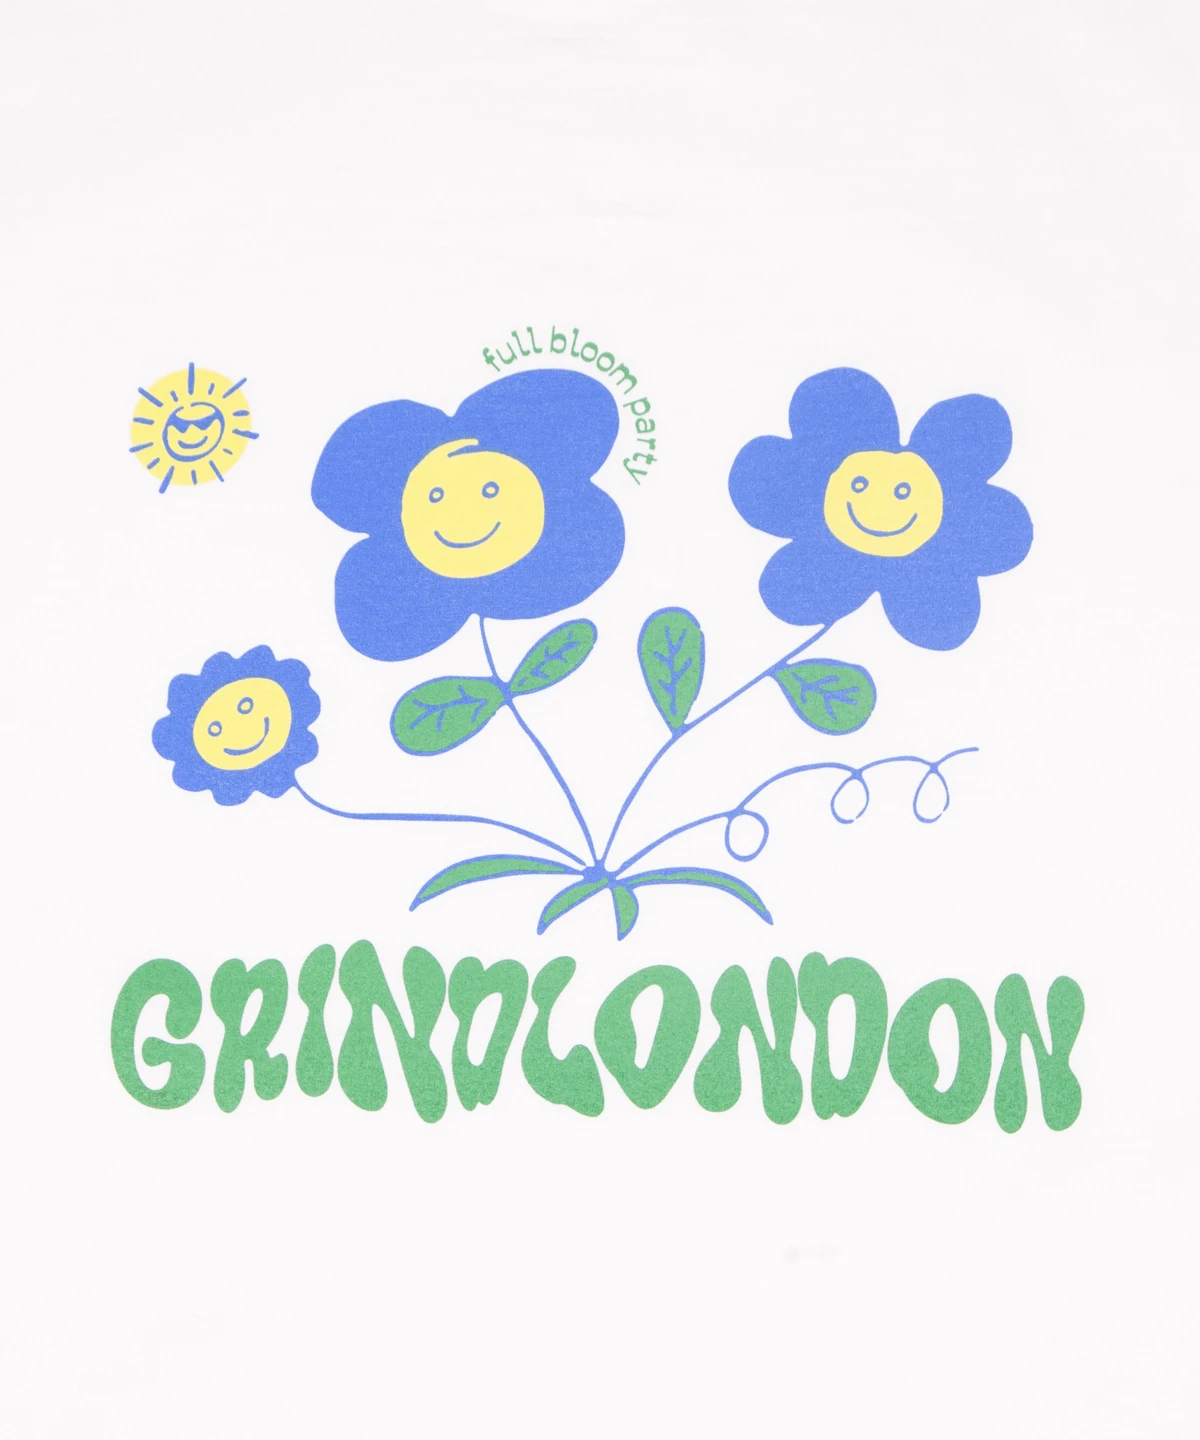 grindlondon 100% cotton full bloom party flower t-shirt white